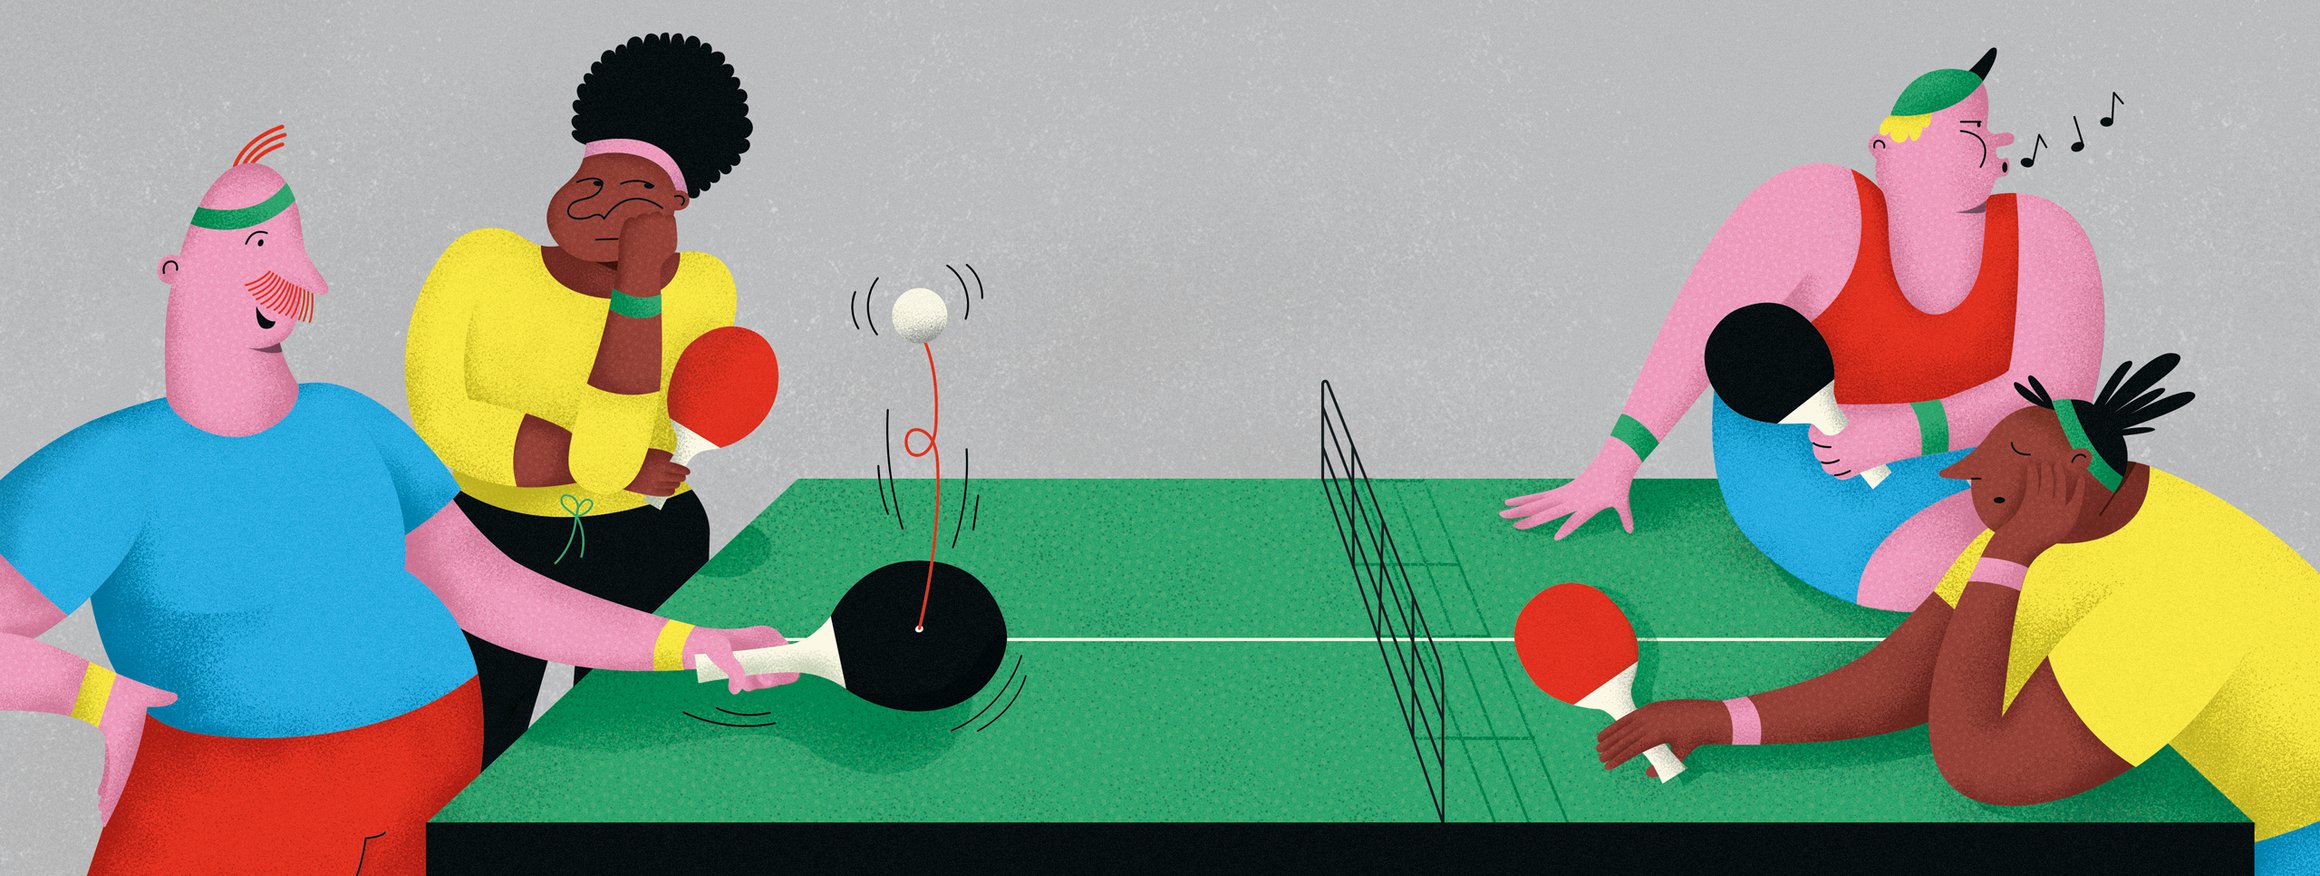 Die Illustration zeigt einen Mann am Pingpong-Tisch, der angeregt spricht und dabei Ping-Pong mit sich selbst spielt, während seine Spielpartnerin gelangweilt schaut